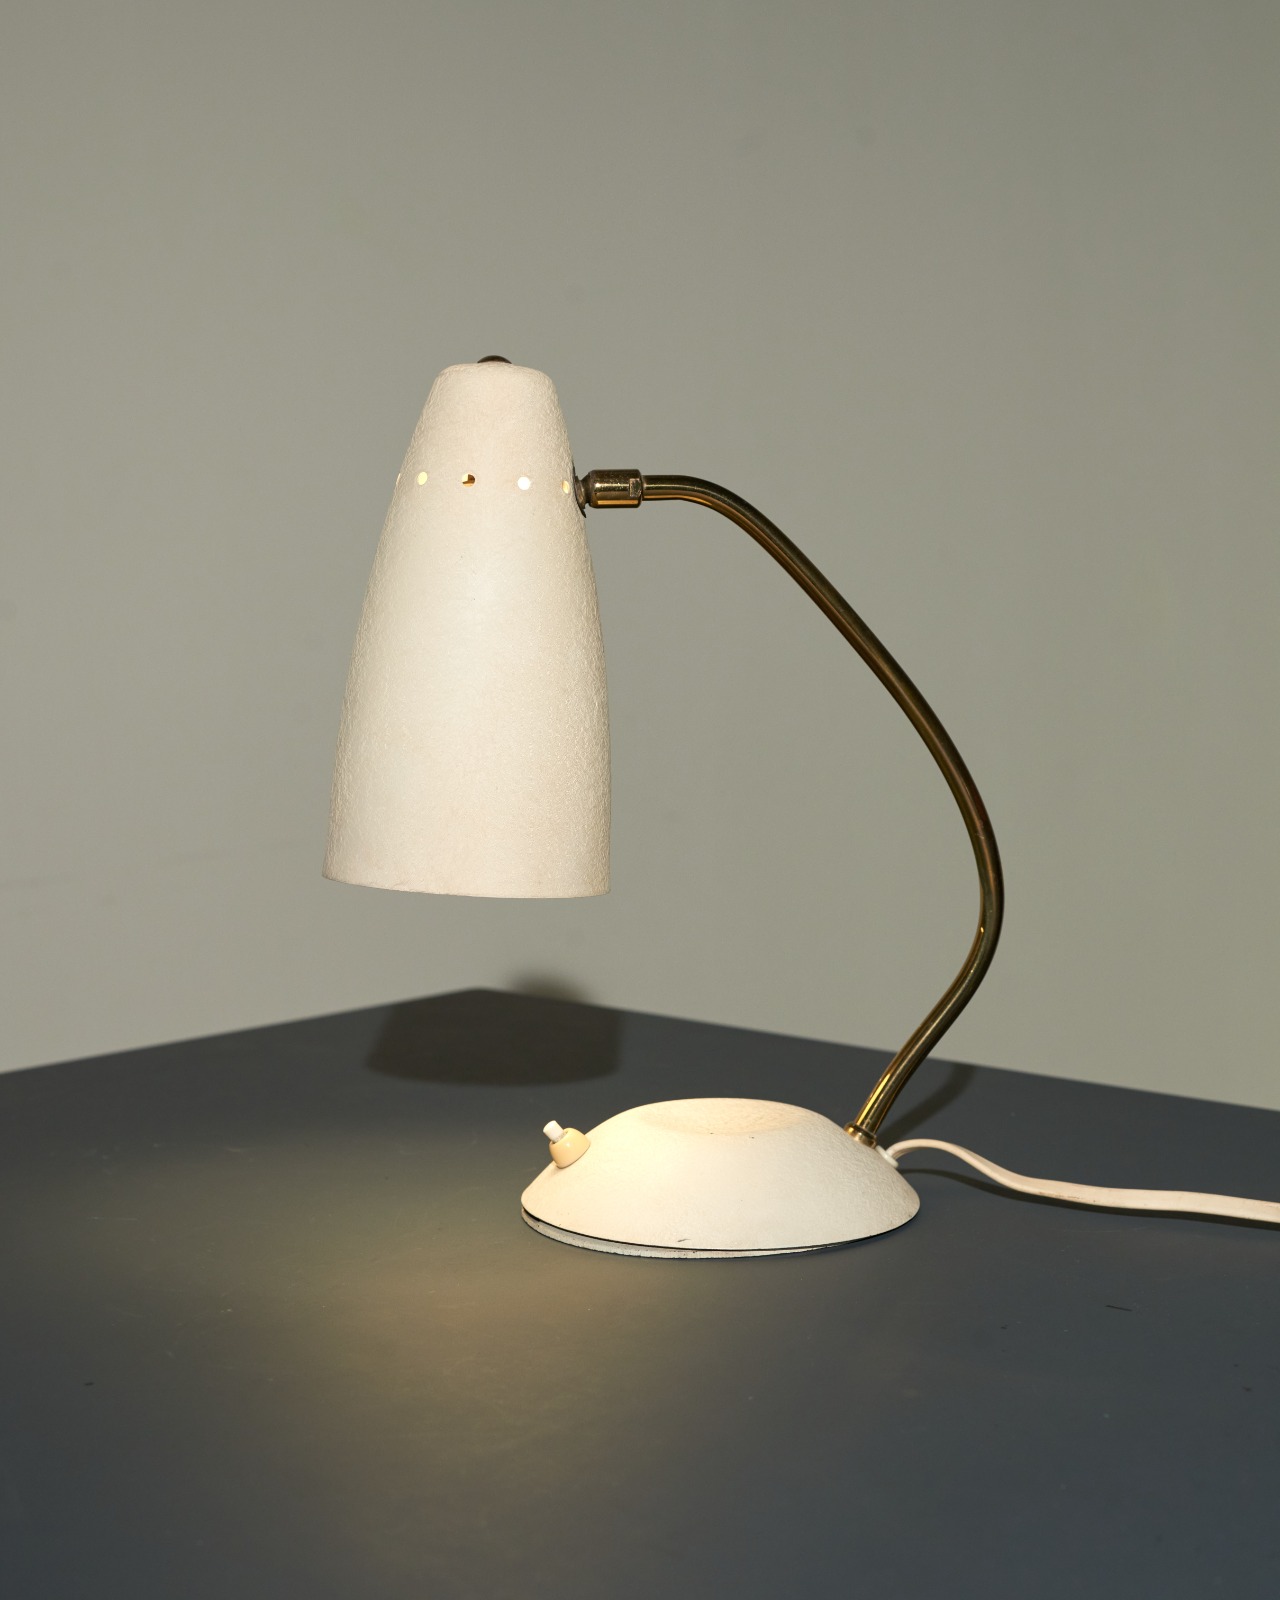 Stilnovo Desk Lamp